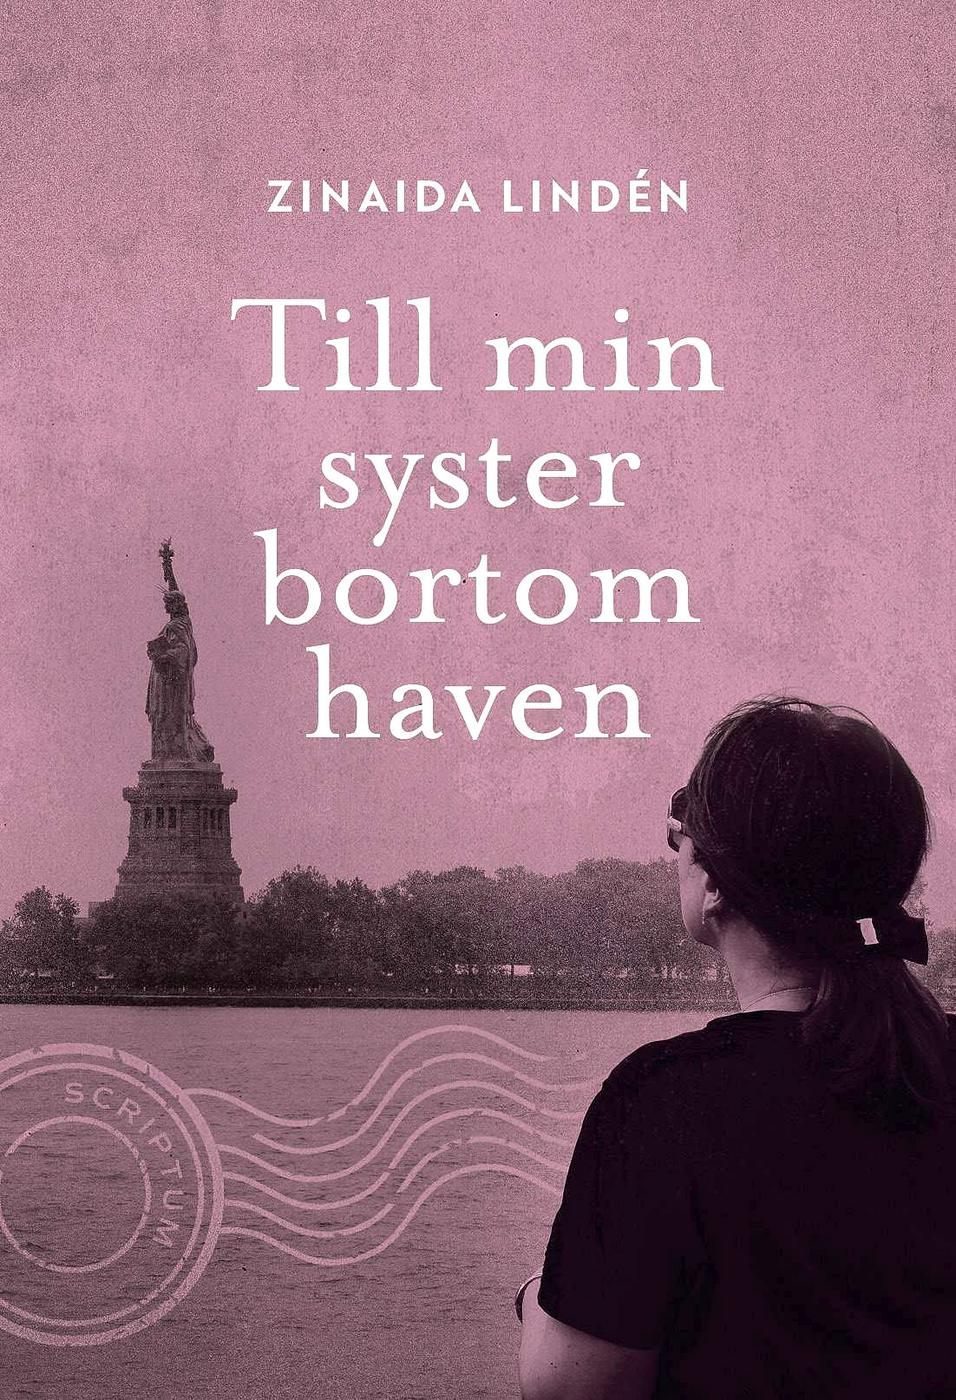 Bokomslag i rosa och svart. Siluetten av en person i förgrunden som blickar över vattnet mot Frihetsstatyn som syns i bakgrunden. Titeln "Till min syster bortom haven" i vitt.